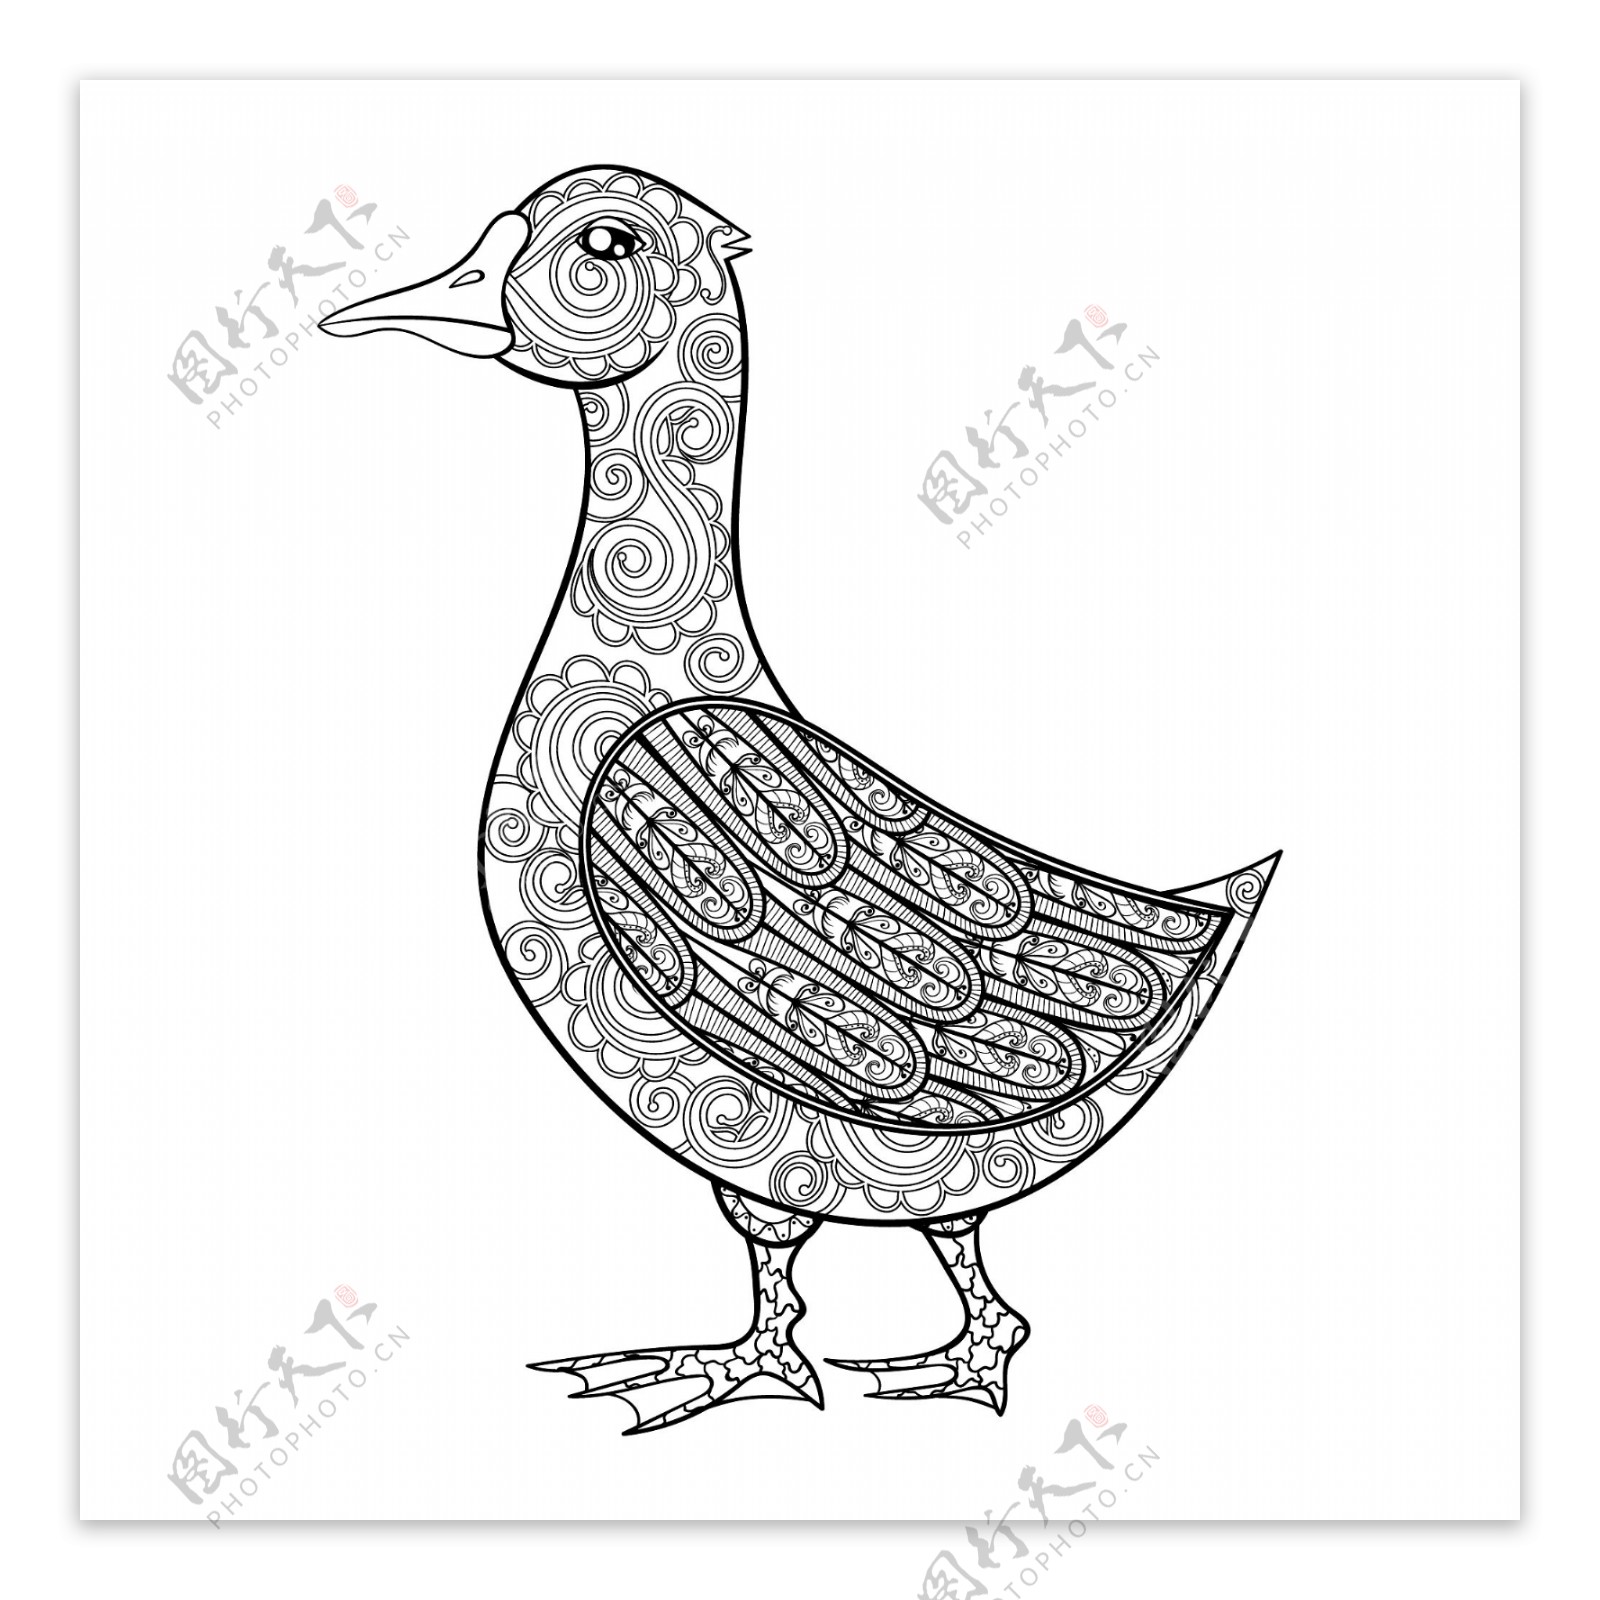 黑白艺术动物鸭子插画